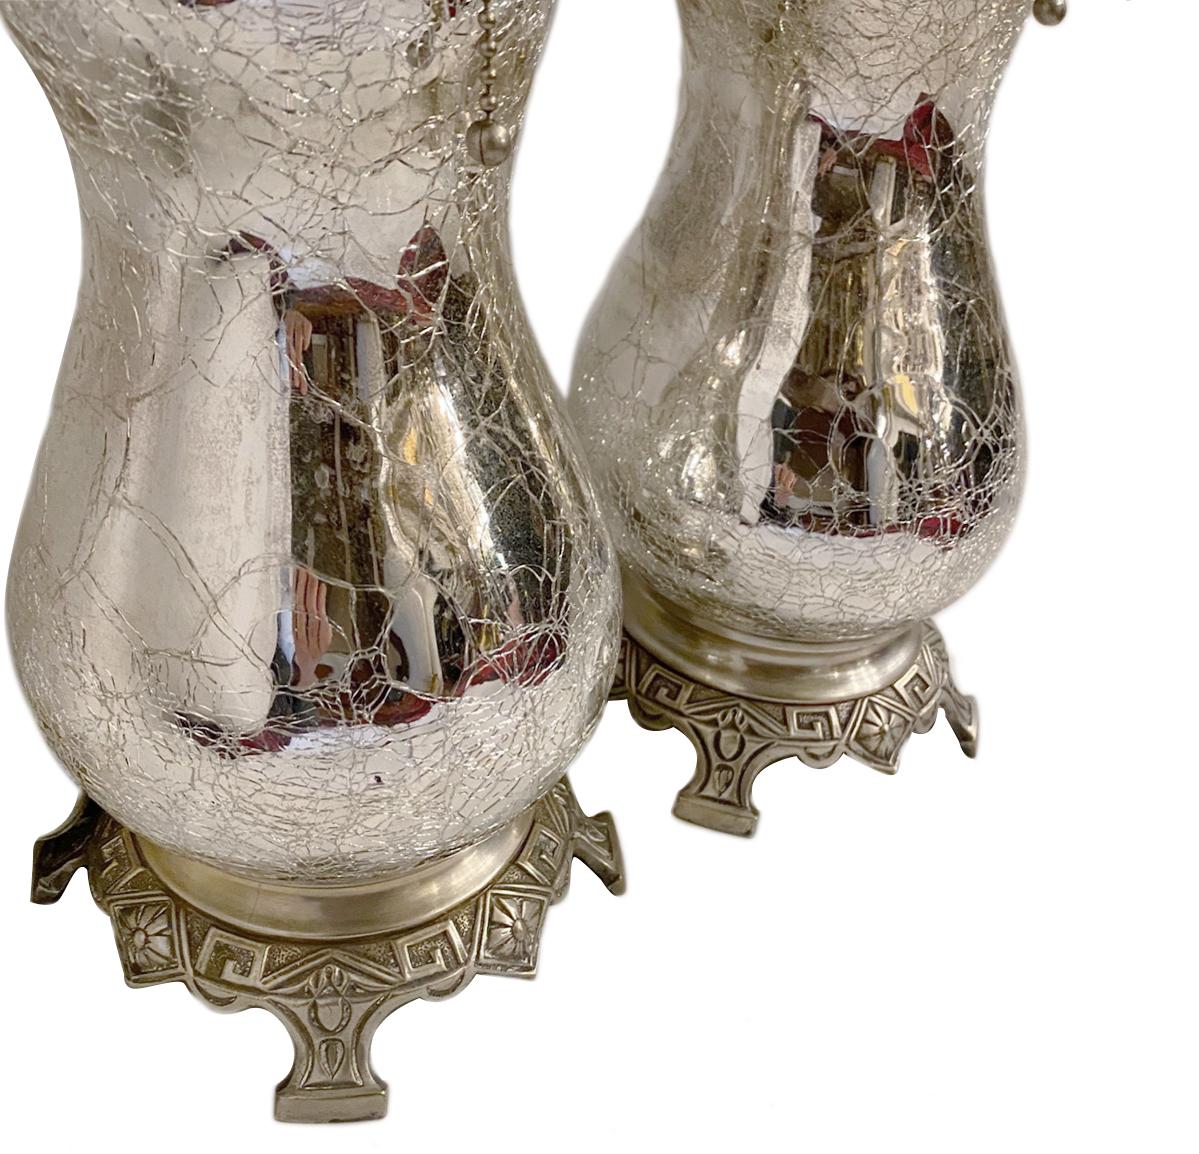 Paire de lampes françaises en verre au mercure craquelé datant des années 1920.

Mesures :
Hauteur du corps : 15,5